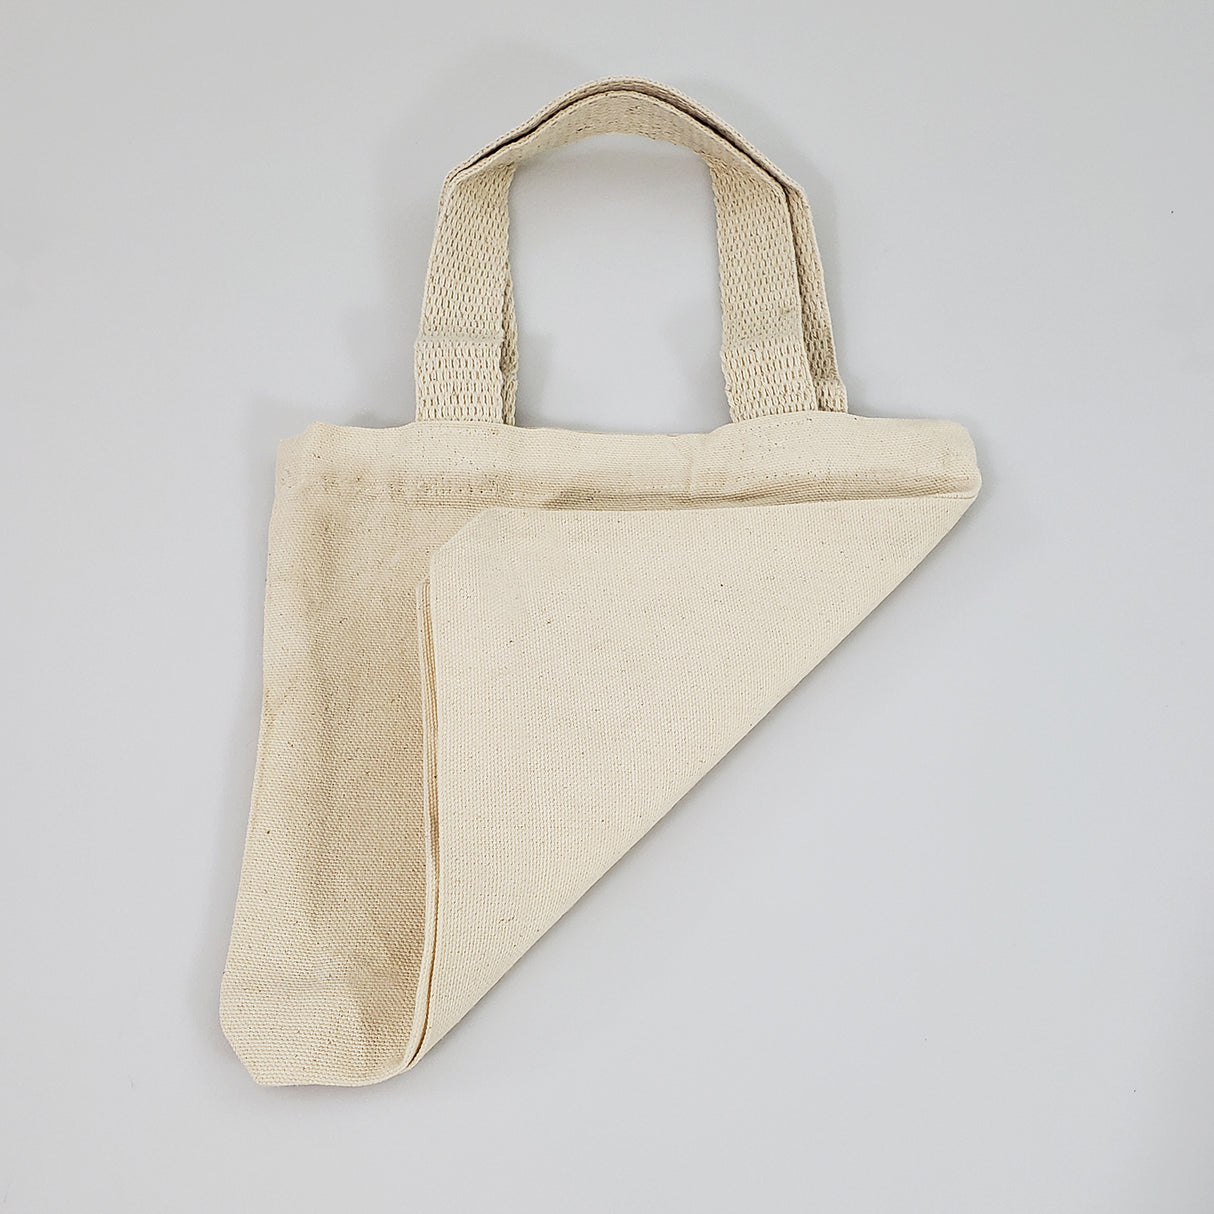 12 ct 8" Mini Cotton Canvas Gift Tote Bags - By Dozen